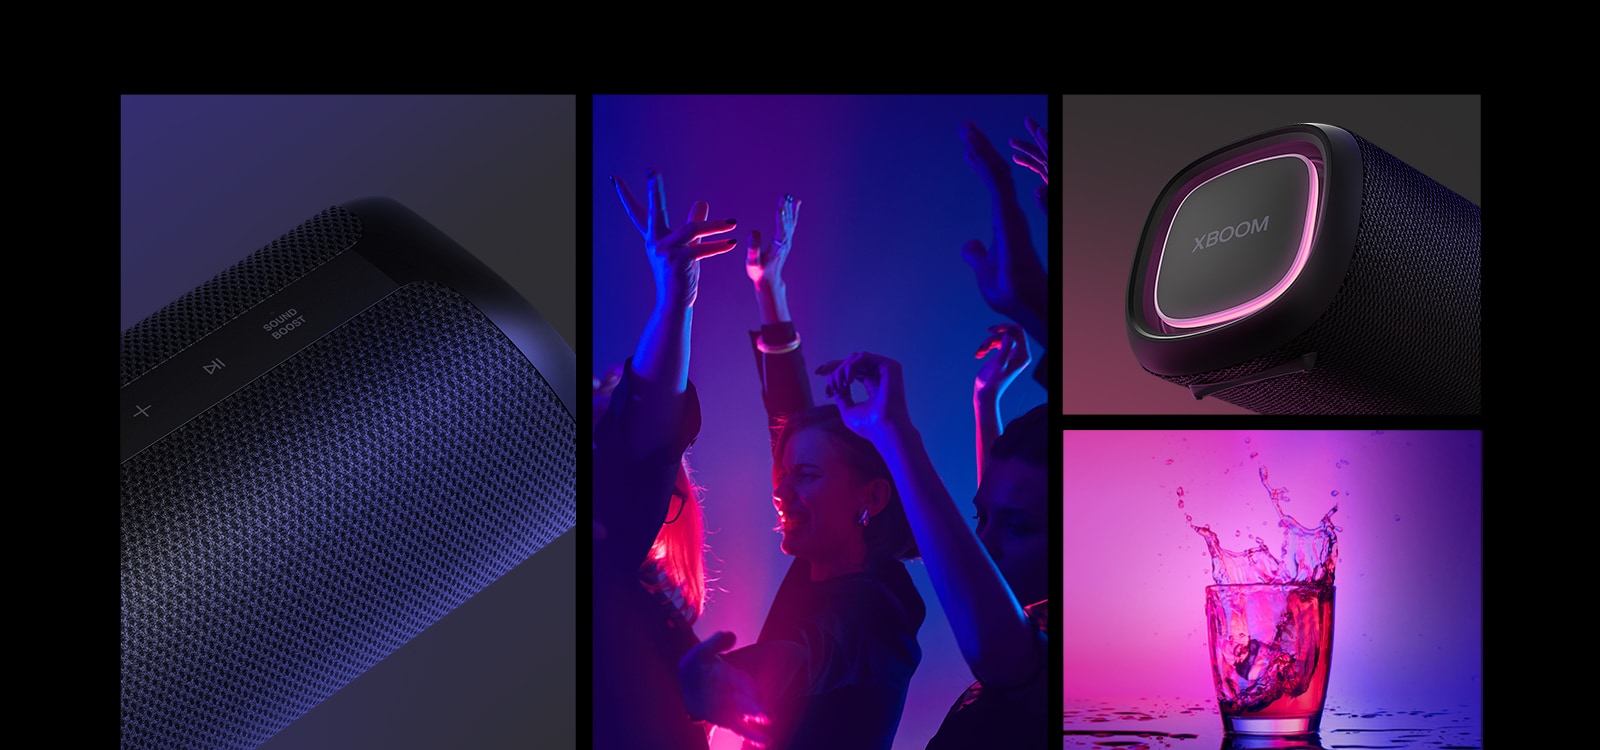 Κολέγιο. Από τα αριστερά, ένα κοντινό πλάνο του LG XBOOM Go XG5. Στη συνέχεια, μια εικόνα ανθρώπων που απολαμβάνουν τη μουσική. Στα δεξιά, από πάνω προς τα κάτω: κοντινό πλάνο του ηχείου με ροζ φωτισμό και δύο ποτήρια με ποτό.